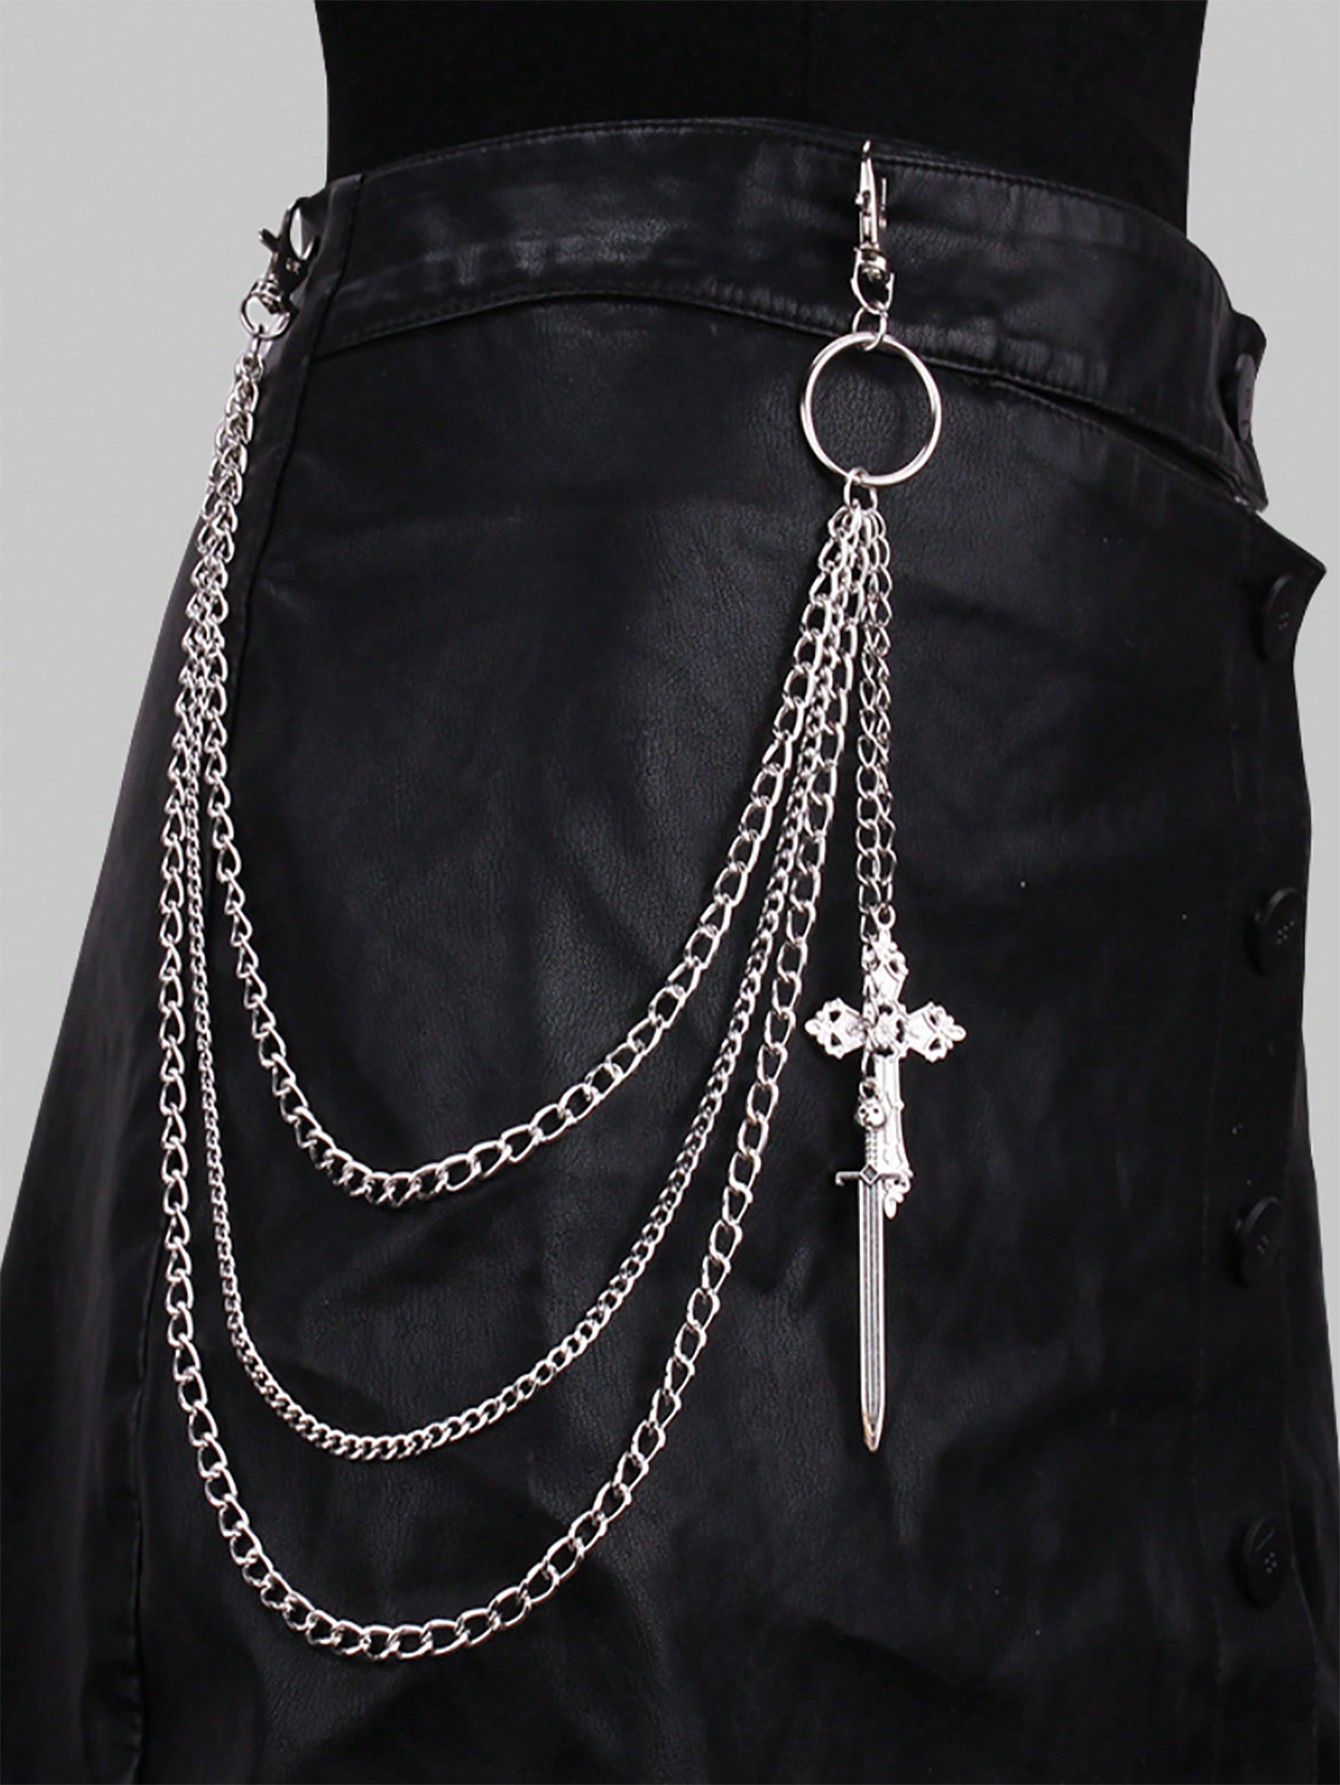 ROMWE Goth 1 шт. Женская многослойная цепочка для брюк с декором в виде меча и креста, серебро